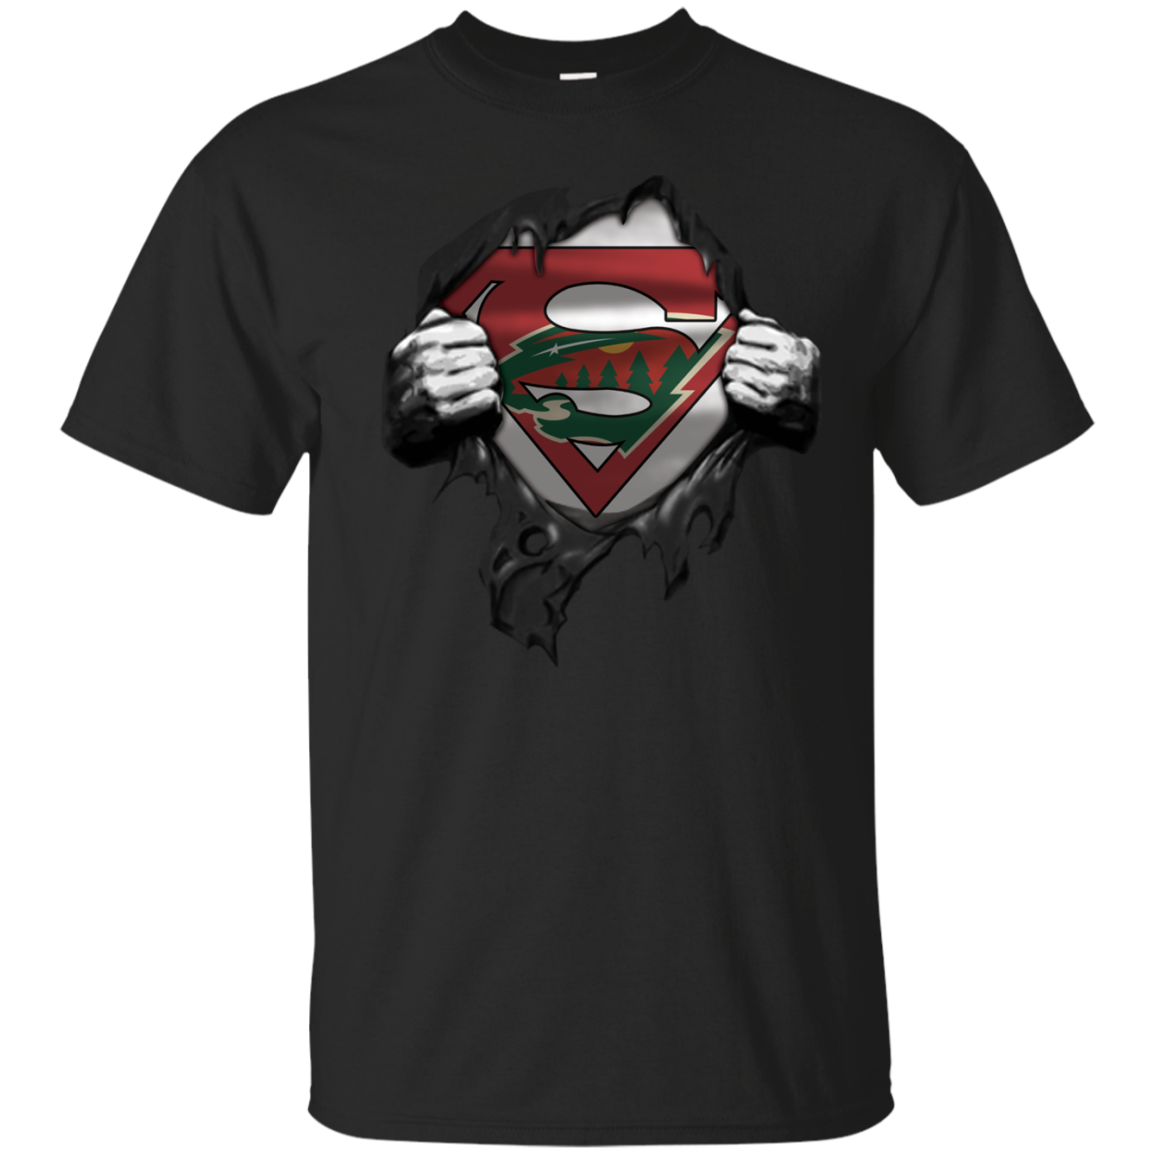 Shirt For Minnesota-wild & Superman Fans T-shirt